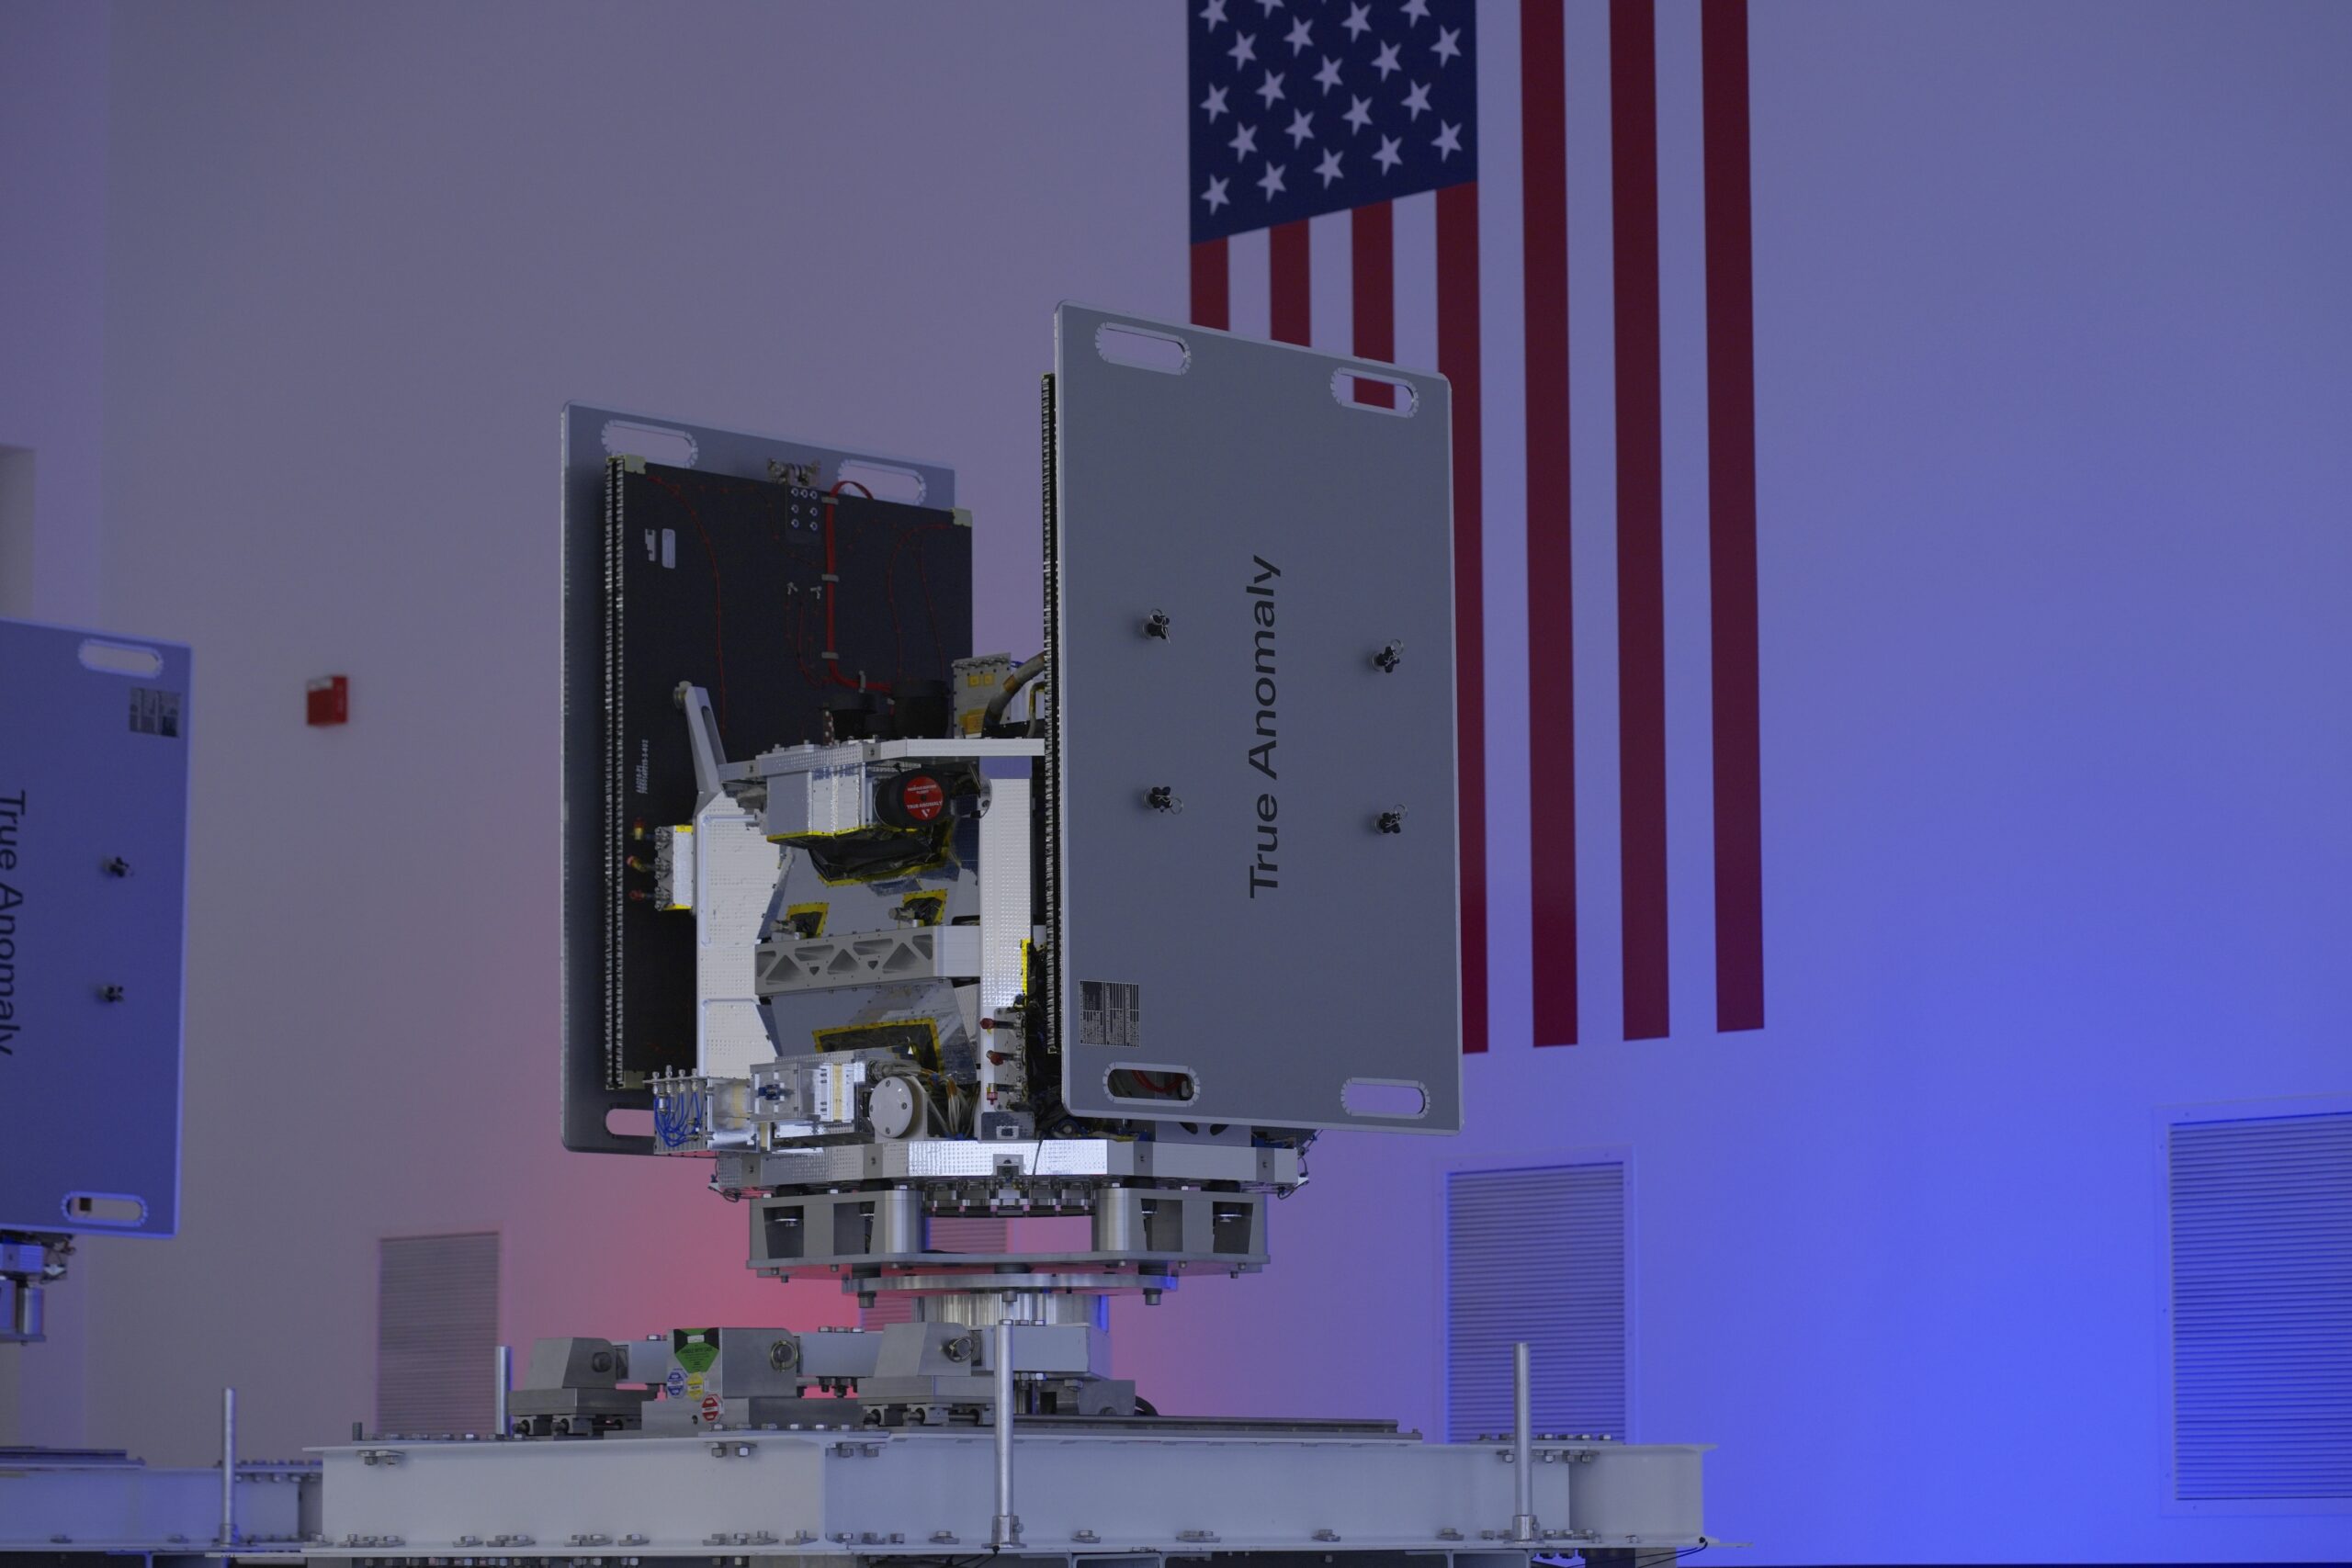 تستعد شركة True Anomaly الناشئة في مجال تكنولوجيا الفضاء لإطلاق أول أقمارها الصناعية